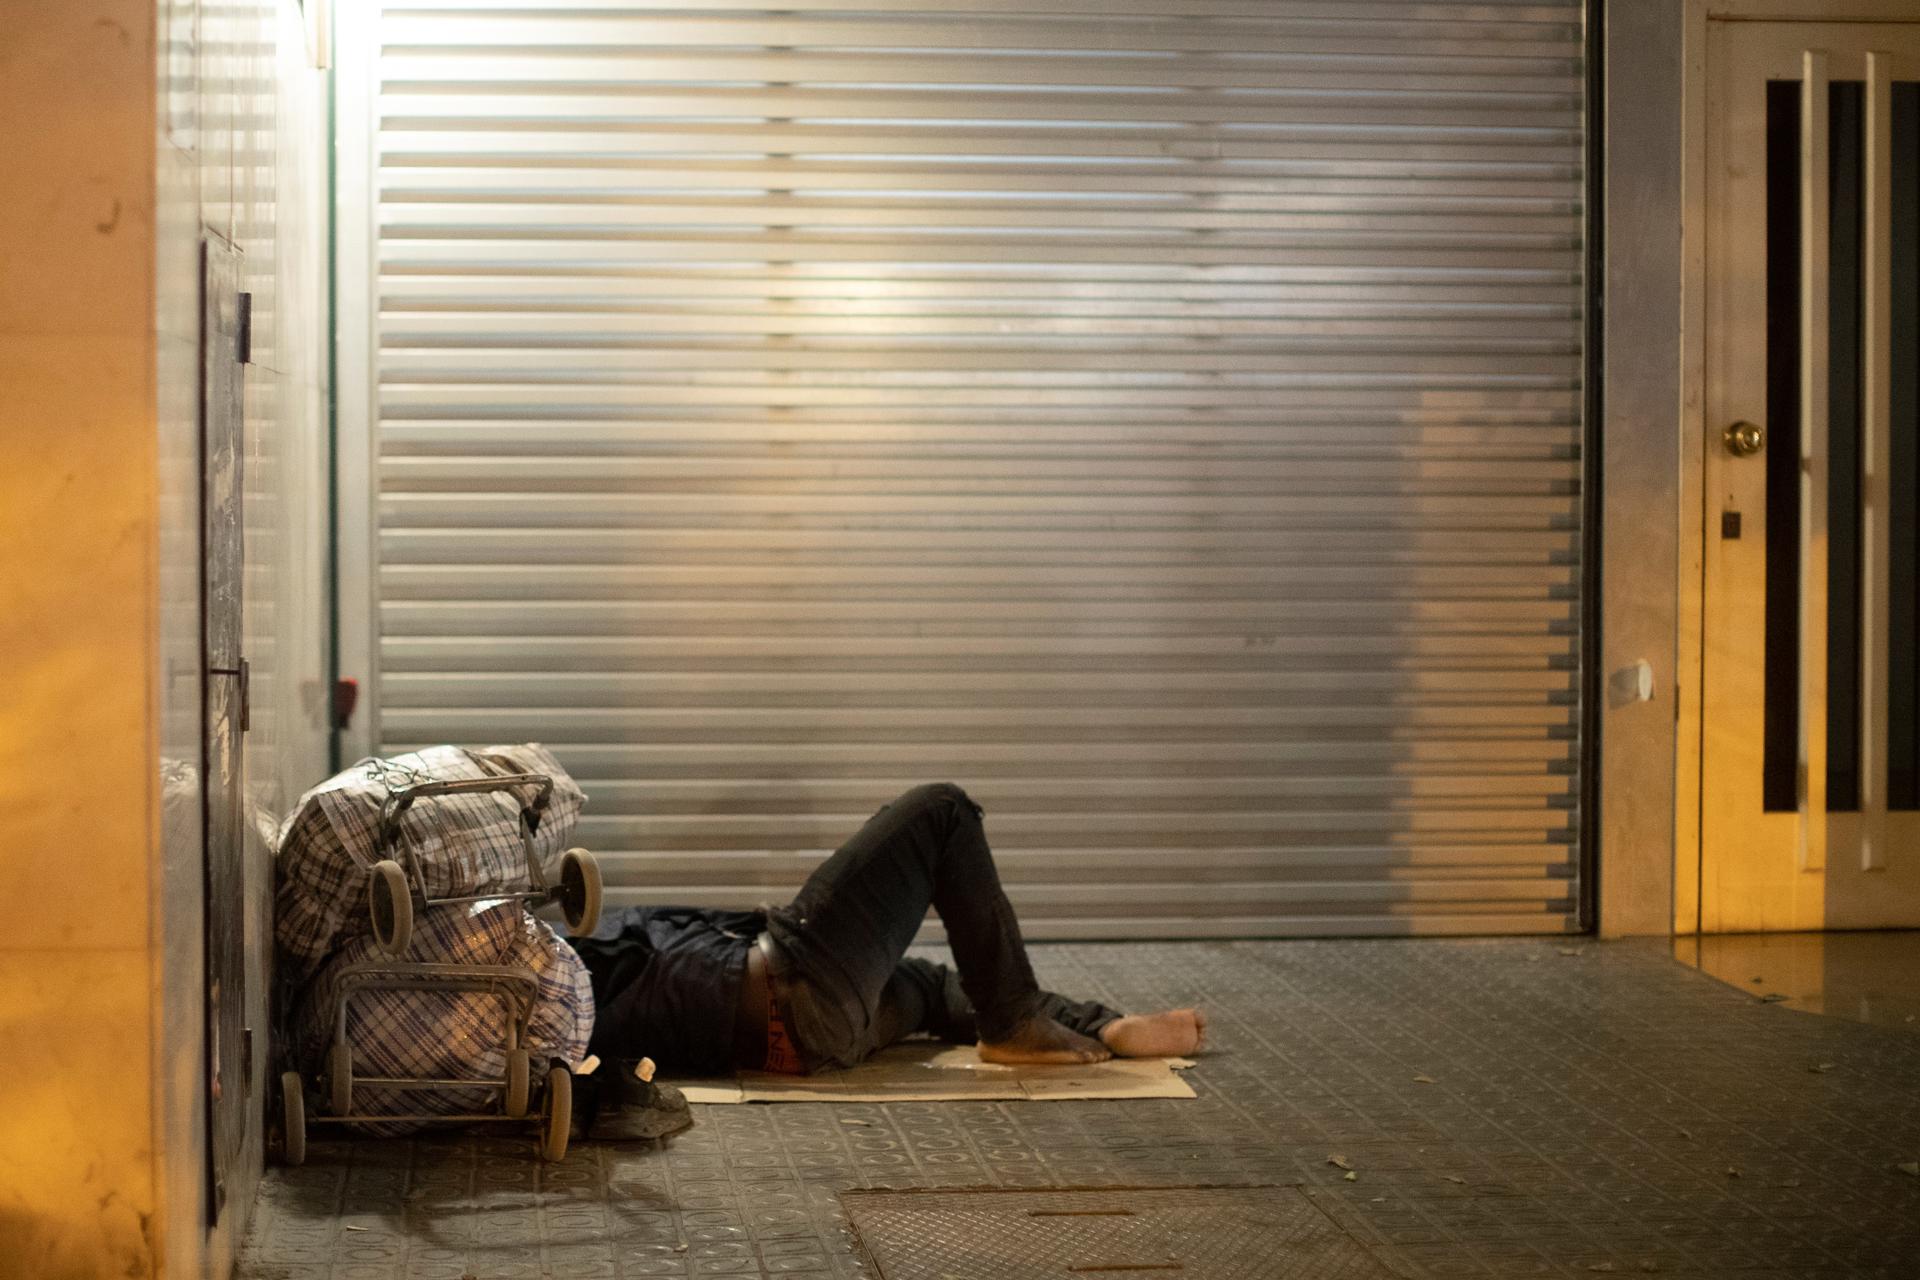 Imagen de archivo que muestra a una persona que vive en la calle. EFE/Marta Pérez.